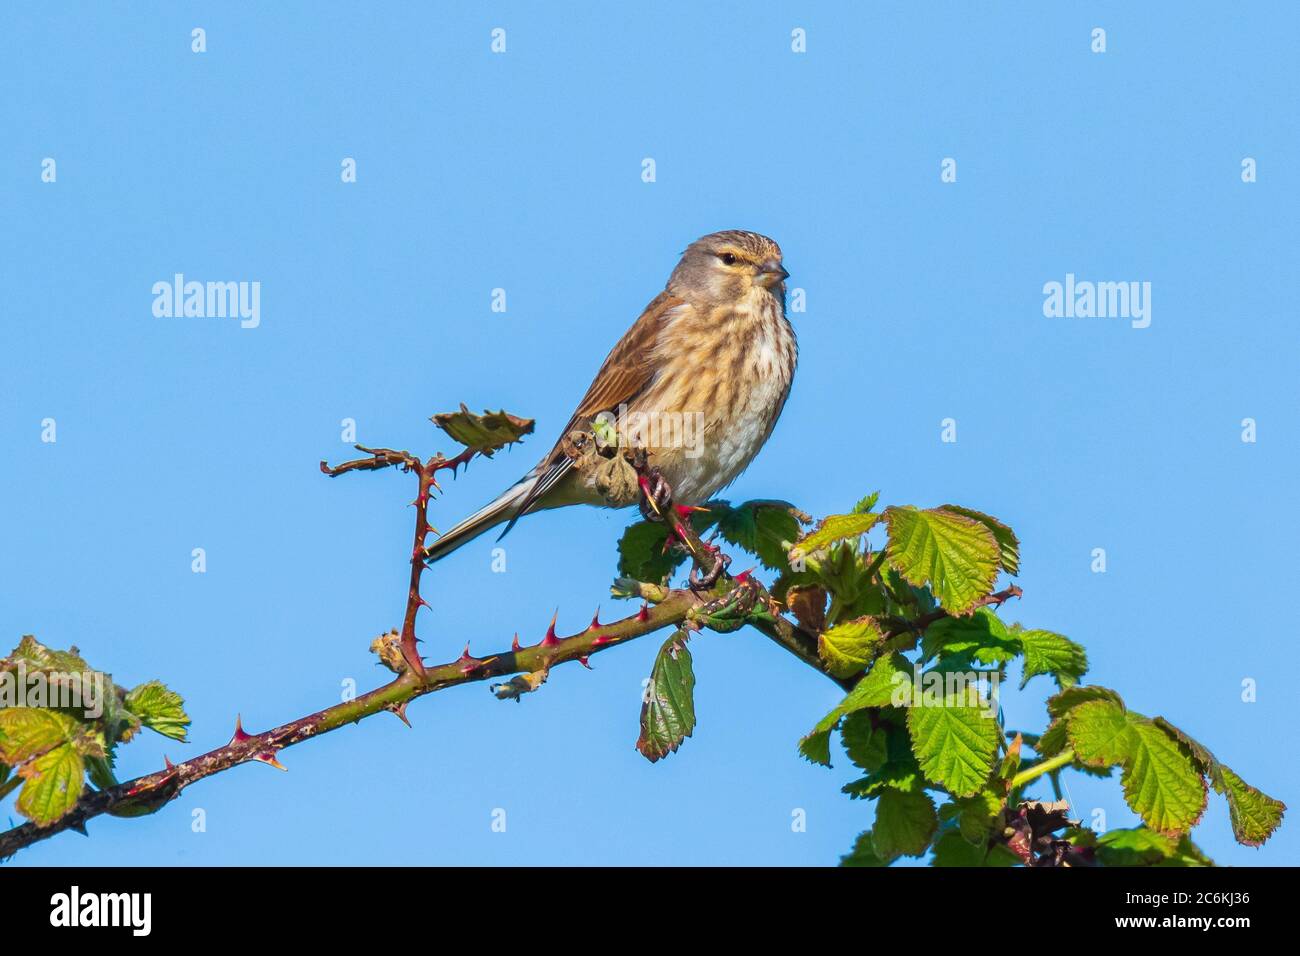 Nahaufnahme Porträt einer Linnett Vogel Weibchen, Carduelis cannabina, Display und die Suche nach einem Partner während der Frühjahrssaison. Blauer Himmel Stockfoto